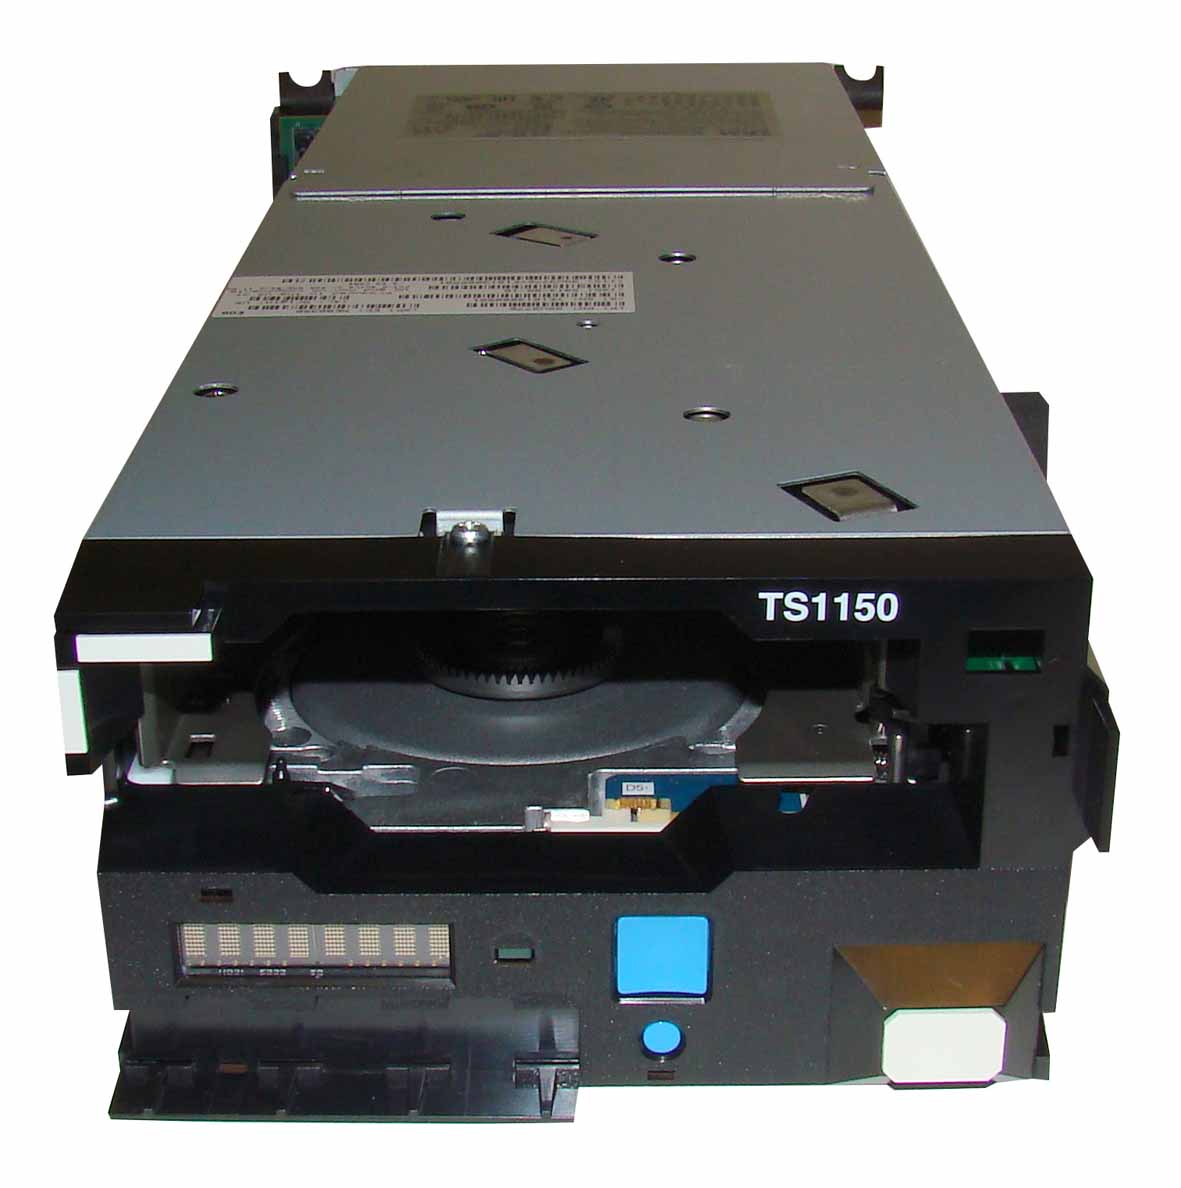 TS1150 Tape Drive boasts 10 TB capacity.